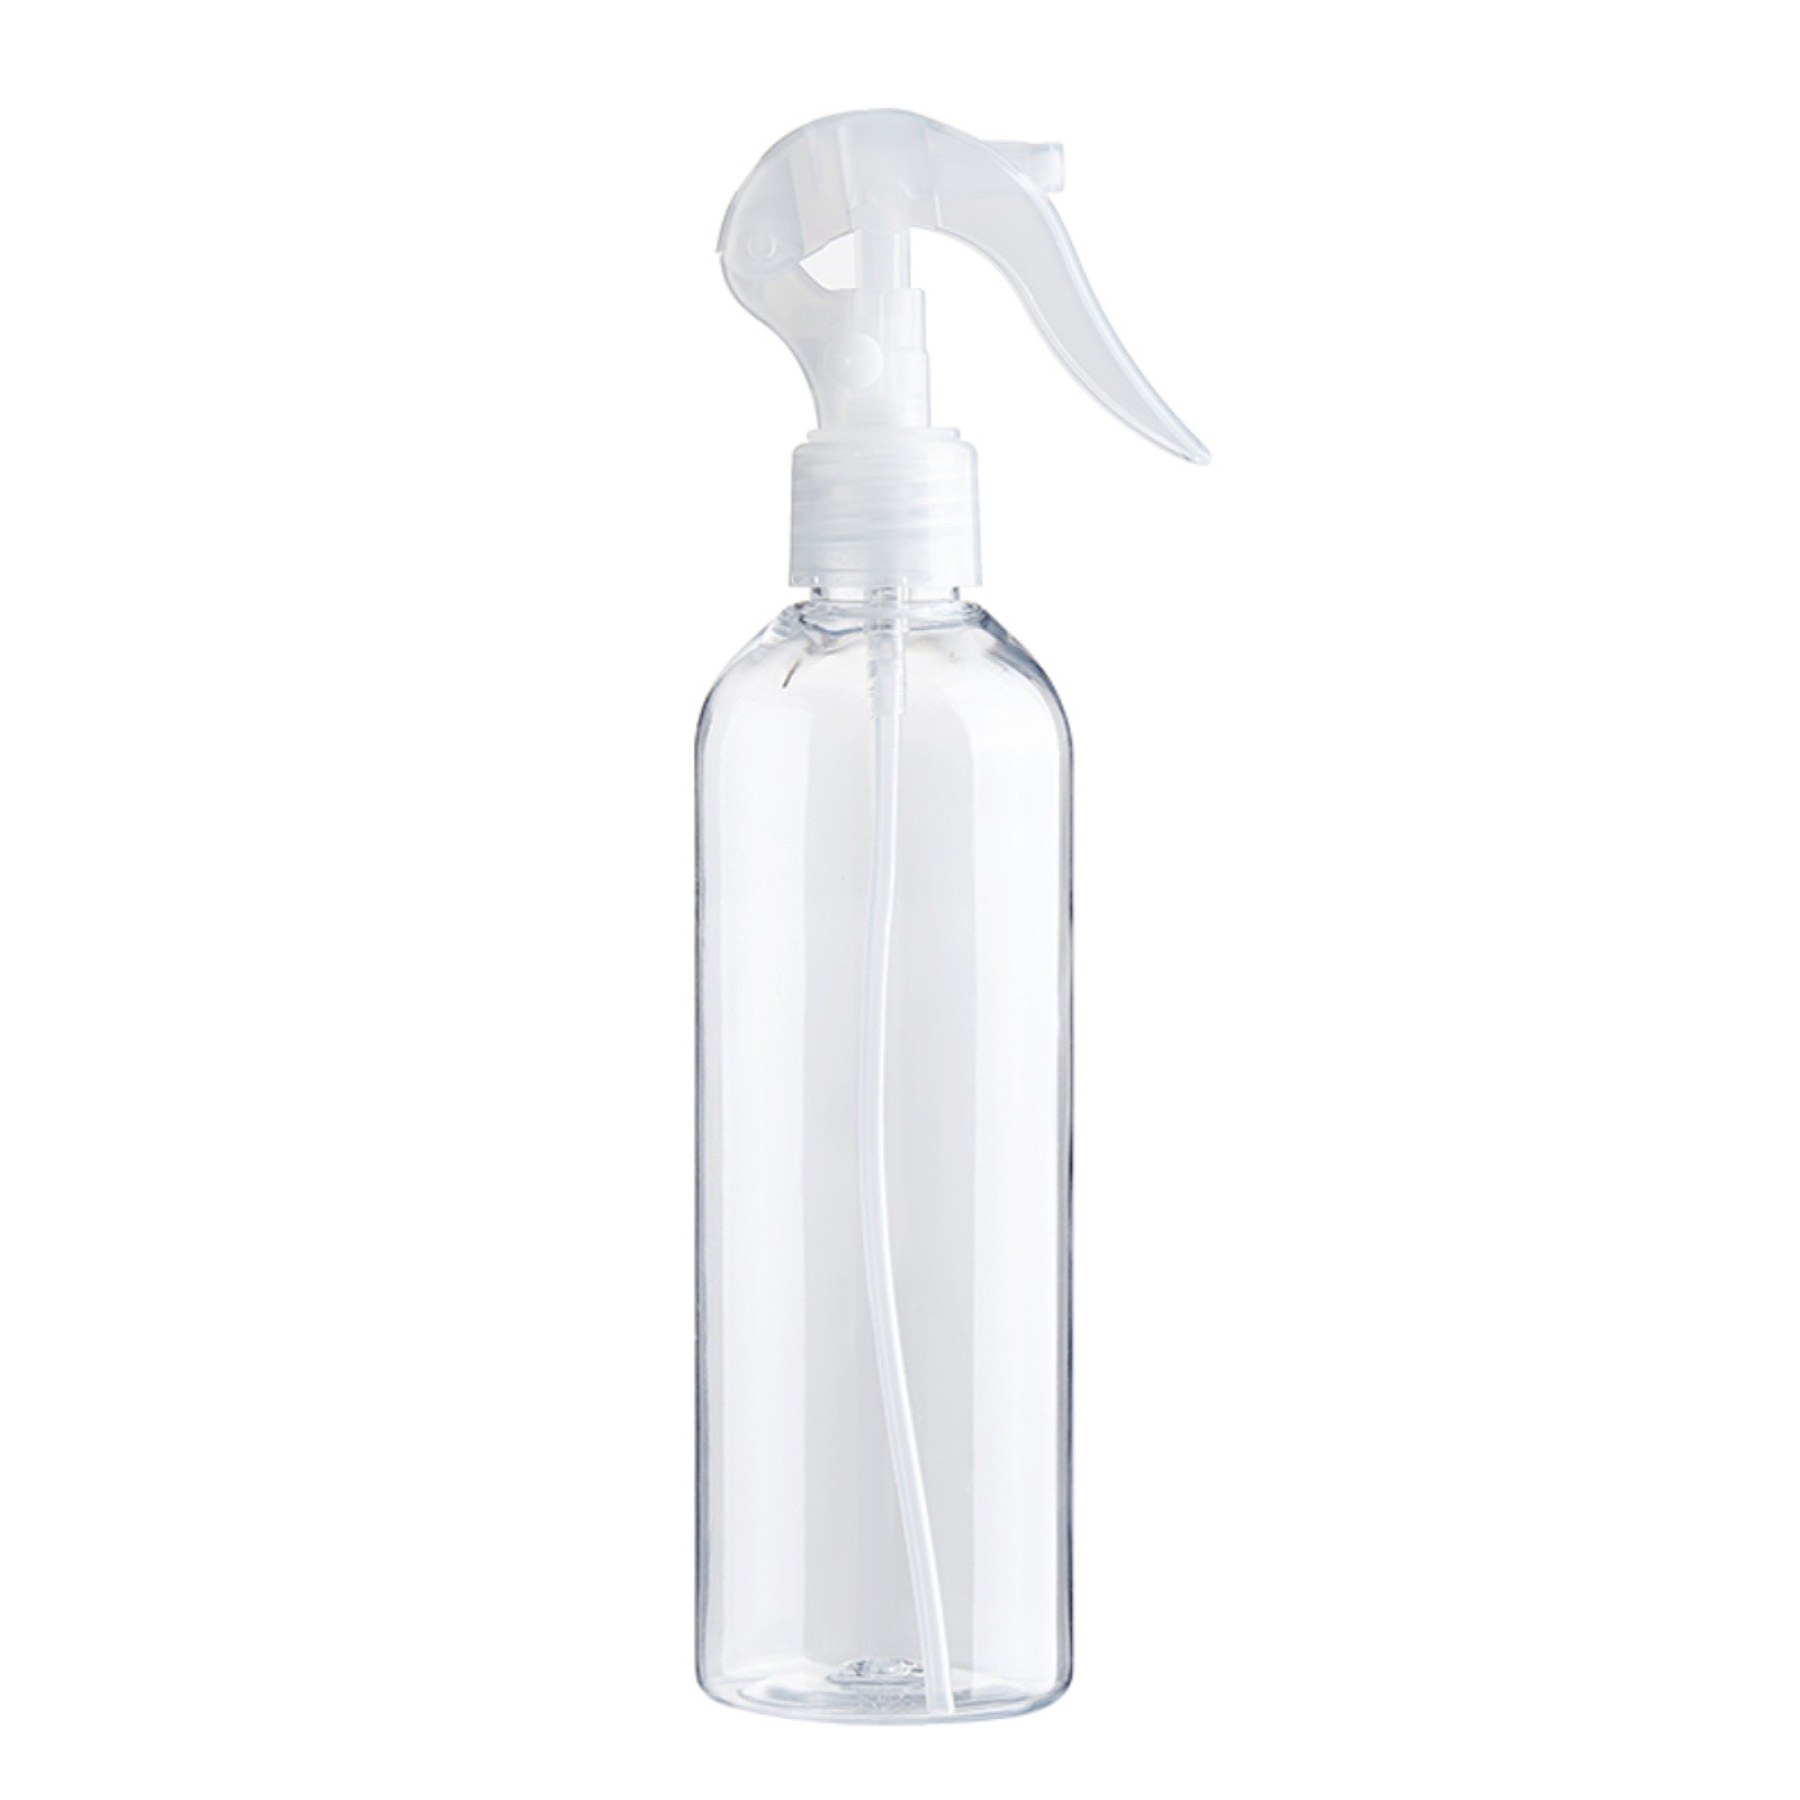  2 unids botella de spray de polvo gatillo pulverizador de polvo  seco pulverizador de aerosol dispensador de aerosol de barbería botellas de spray  pulverizador recargable de la botella cosmética del 